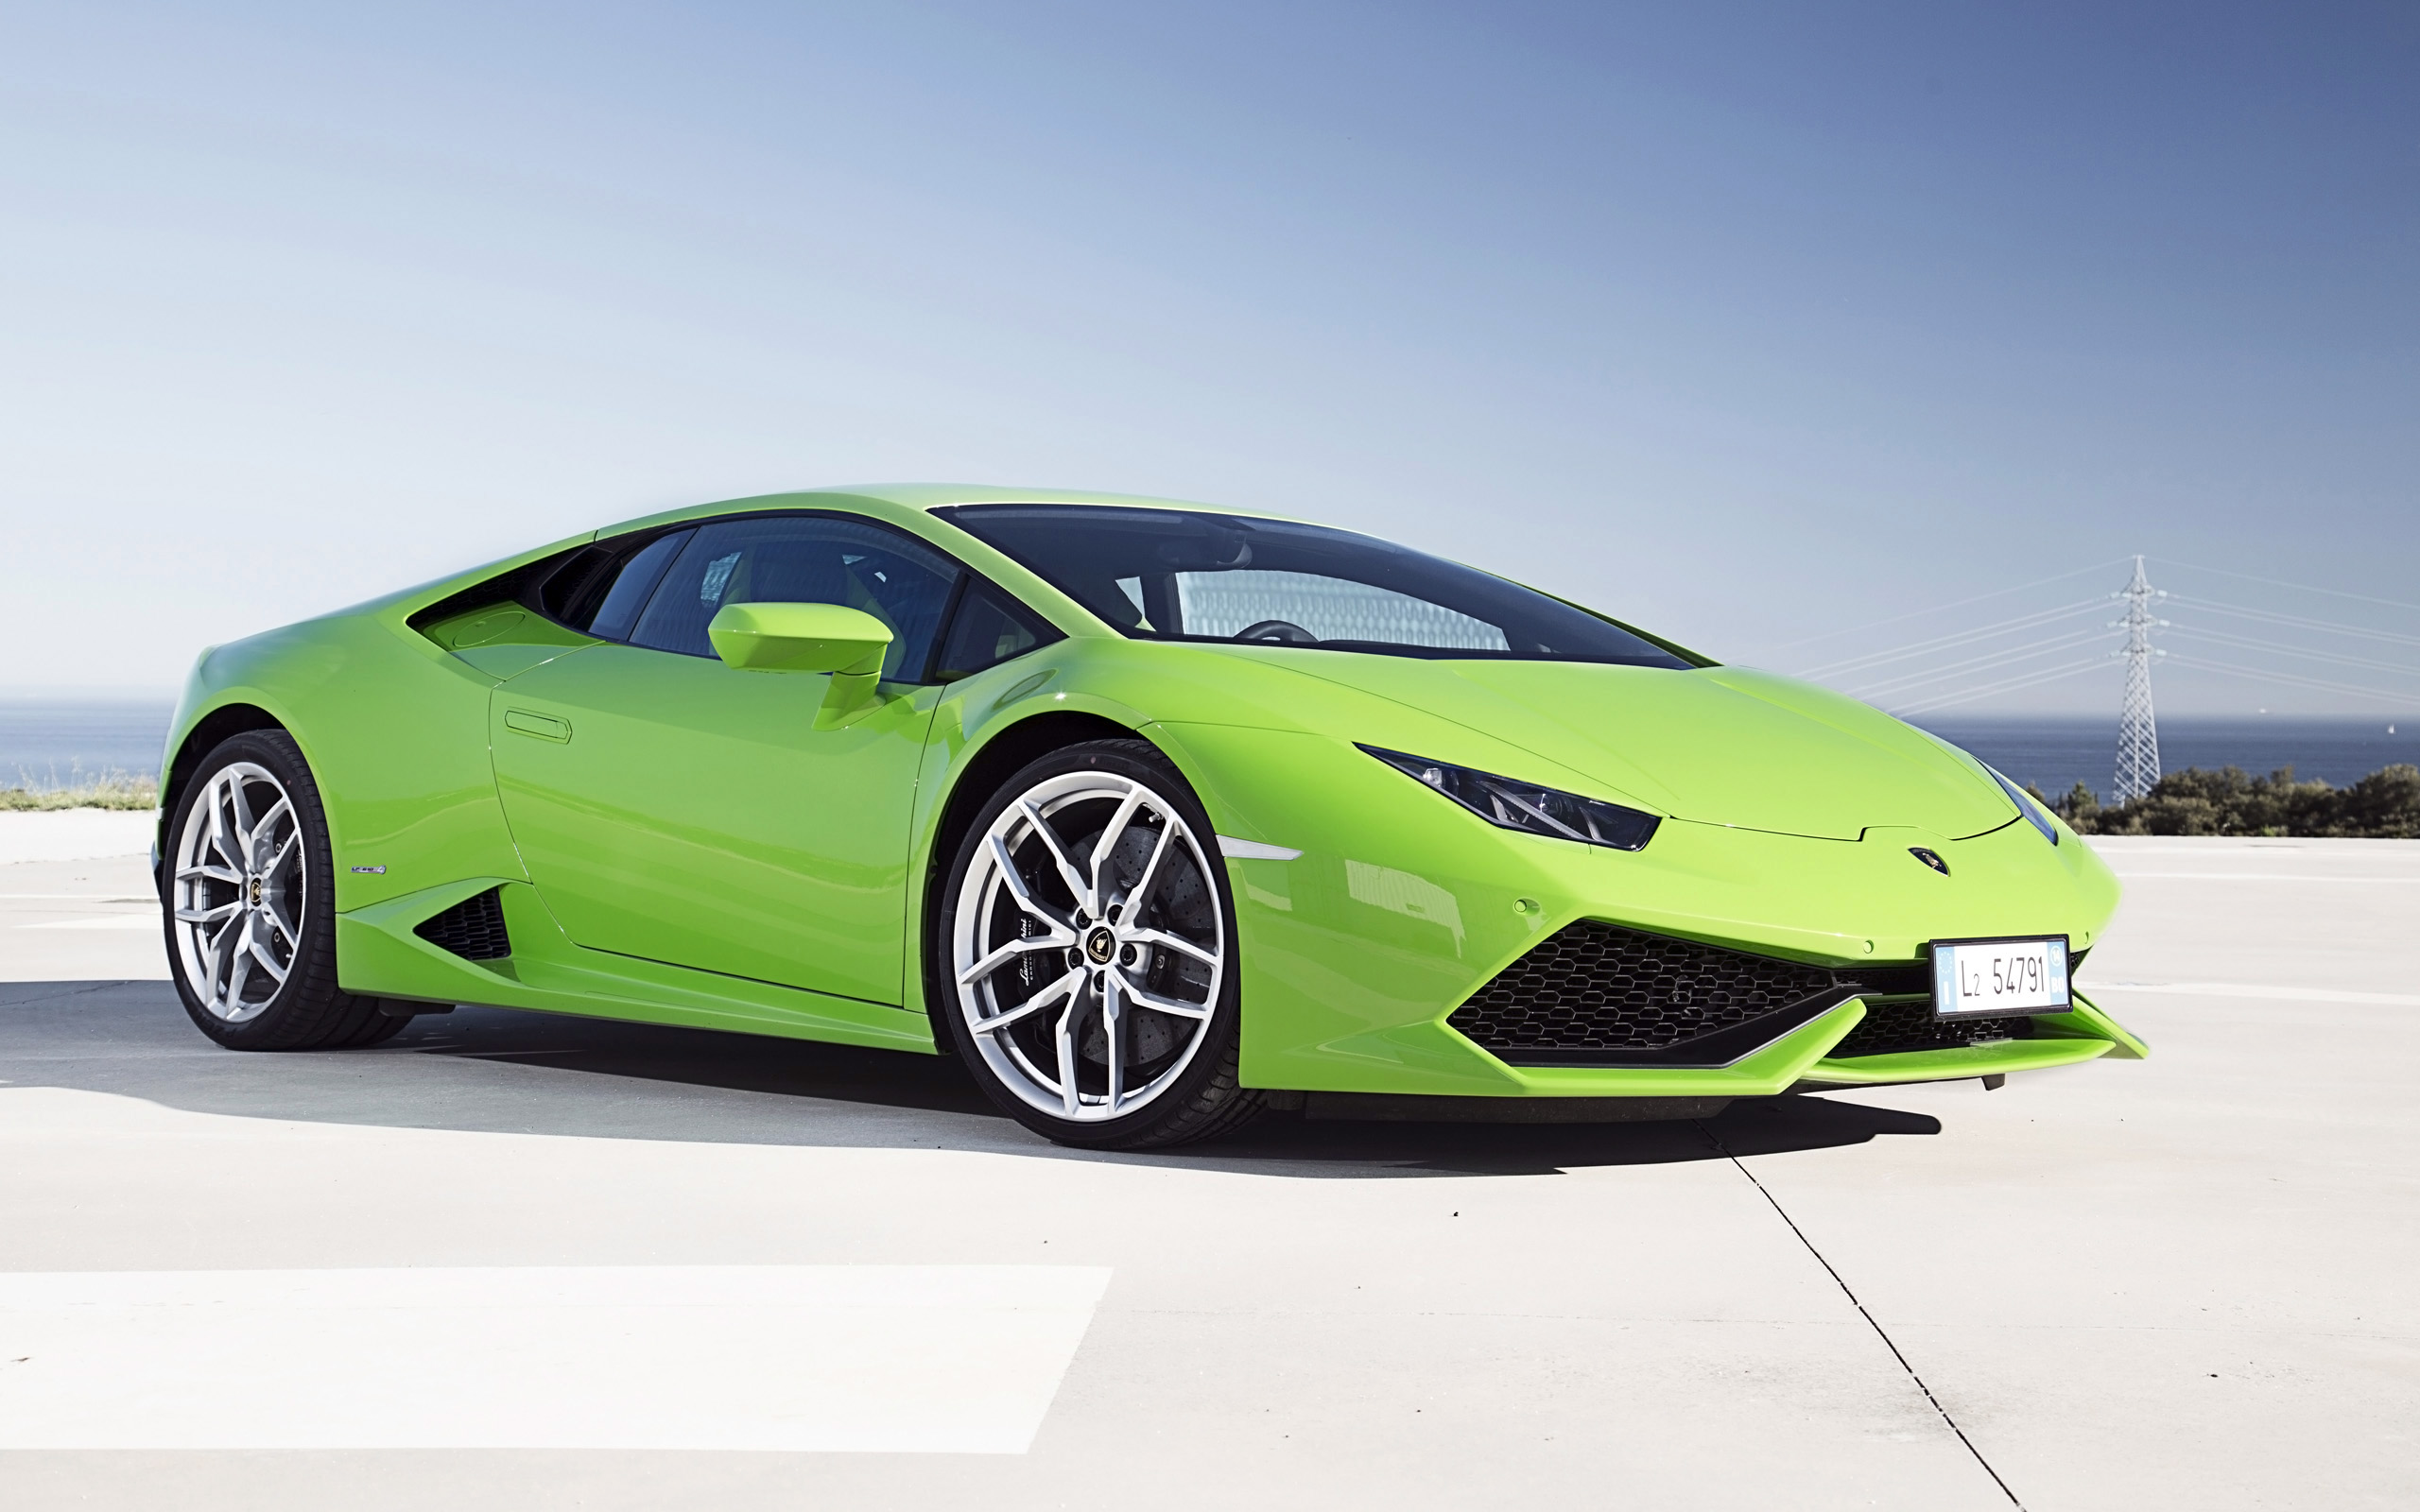 2014 Lamborghini Huracan LP610 4 Green Wallpaper | HD Car ...